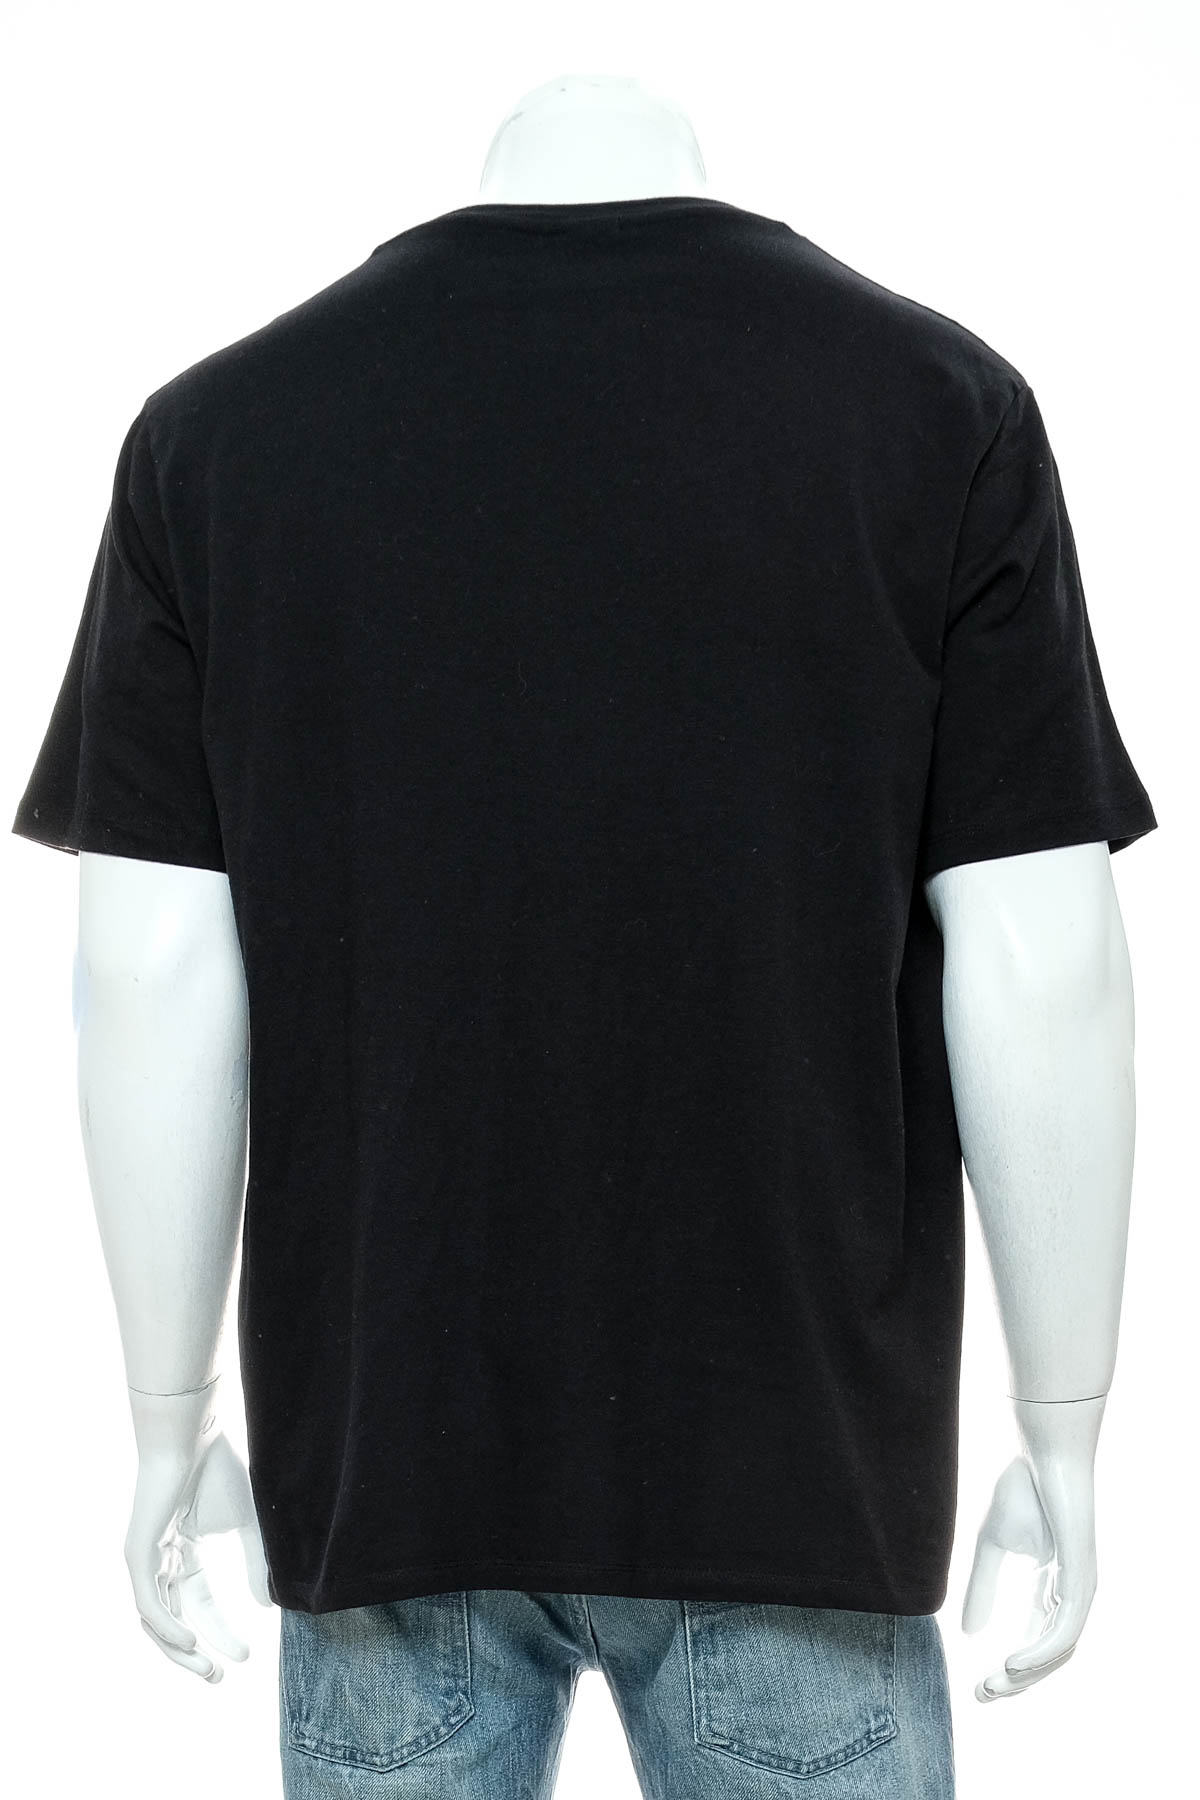 Men's T-shirt - Watsons - 1